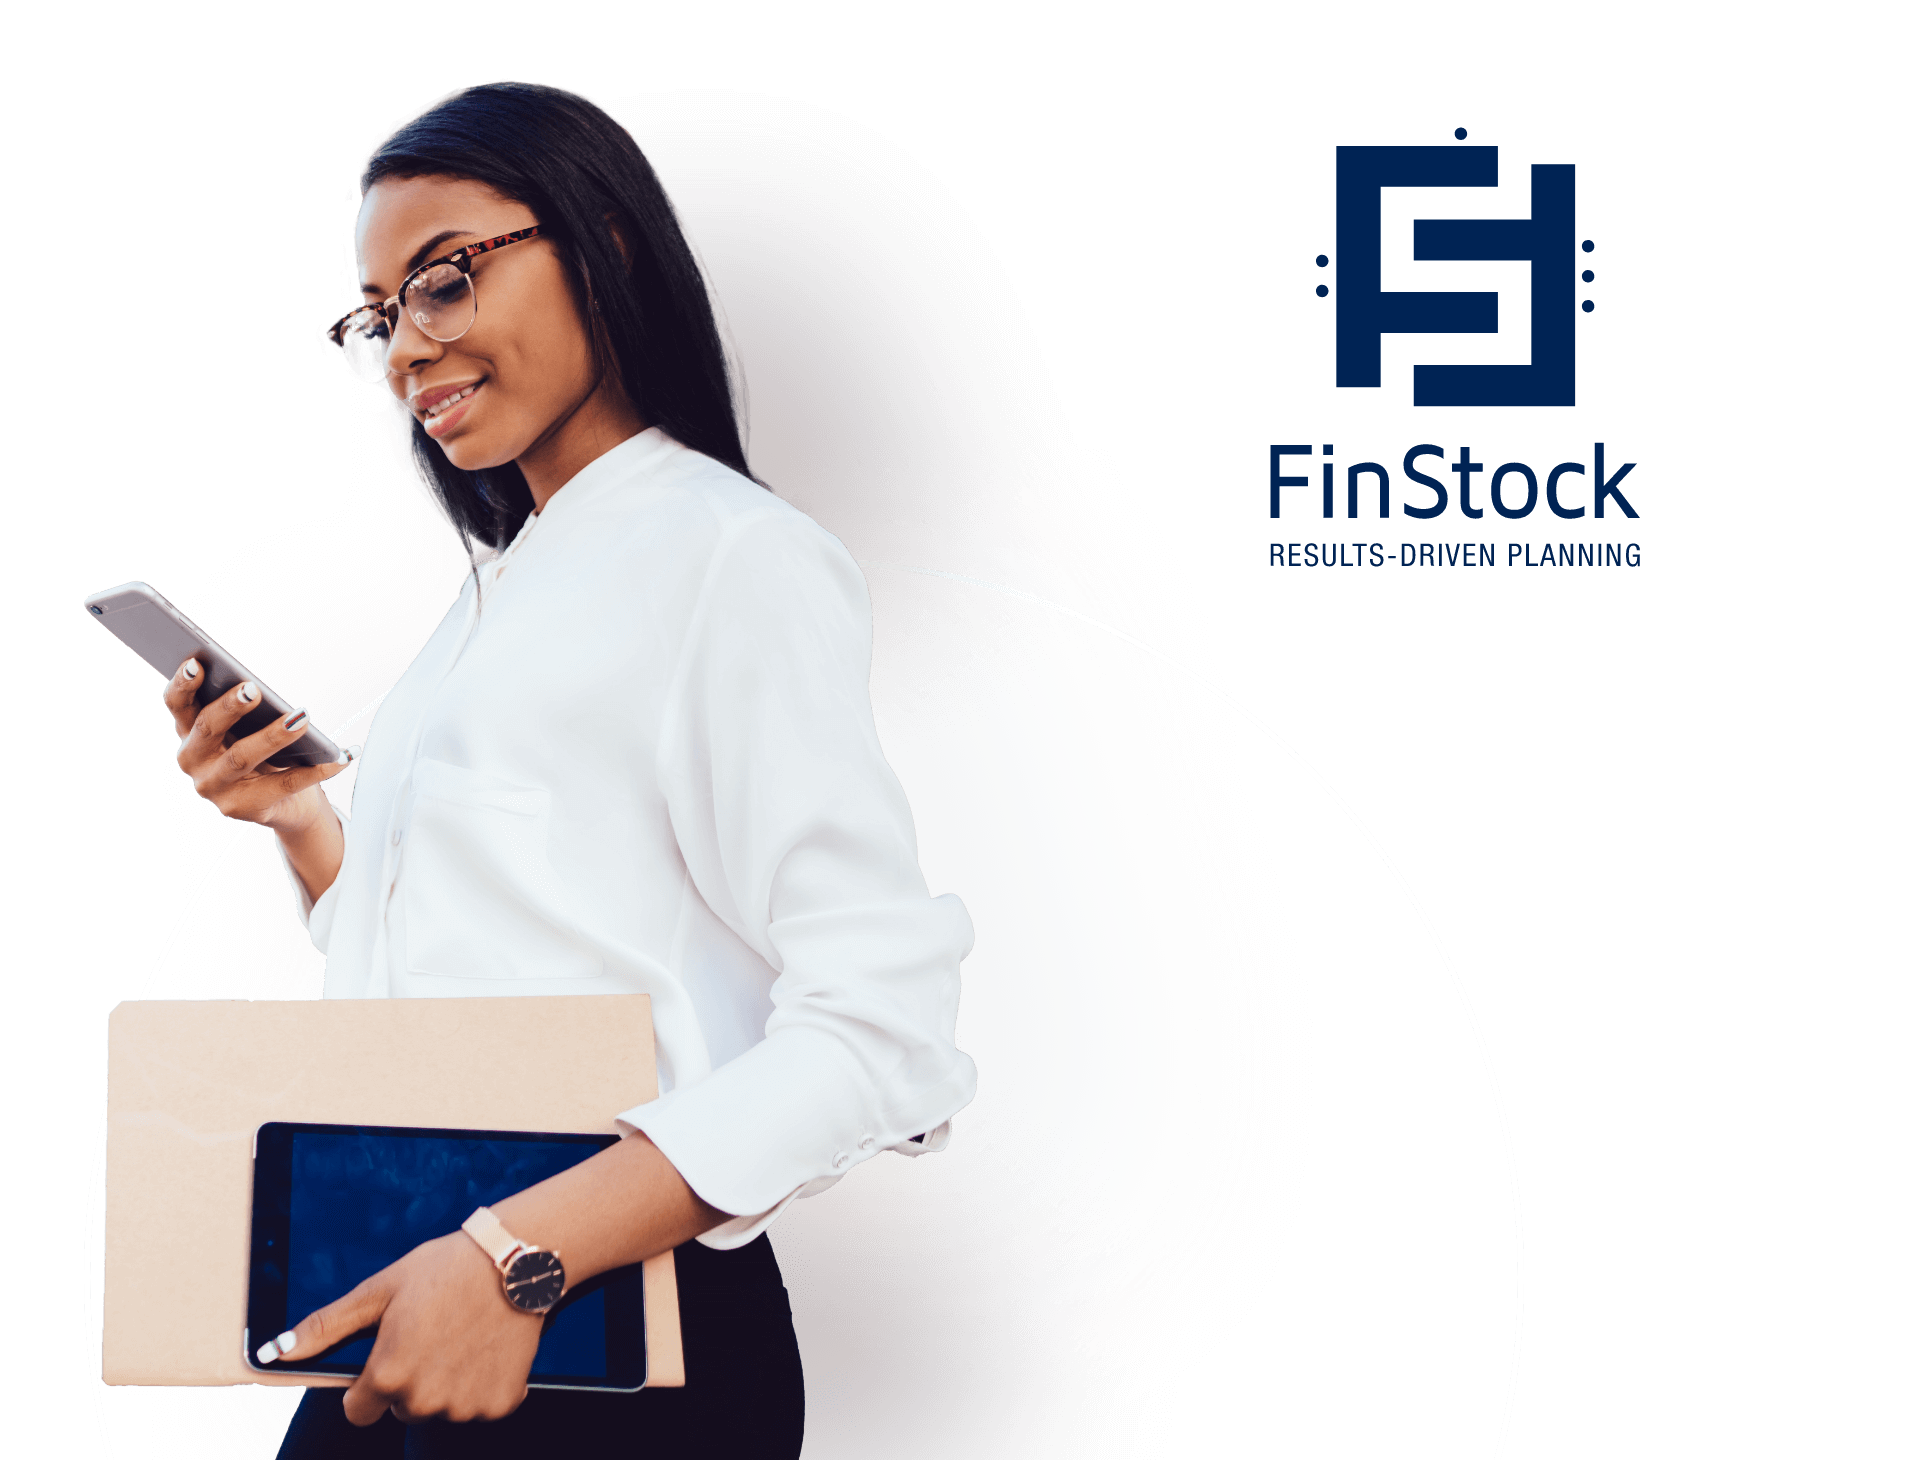 Img Finstock Contactus Desktop@2x, Finstock